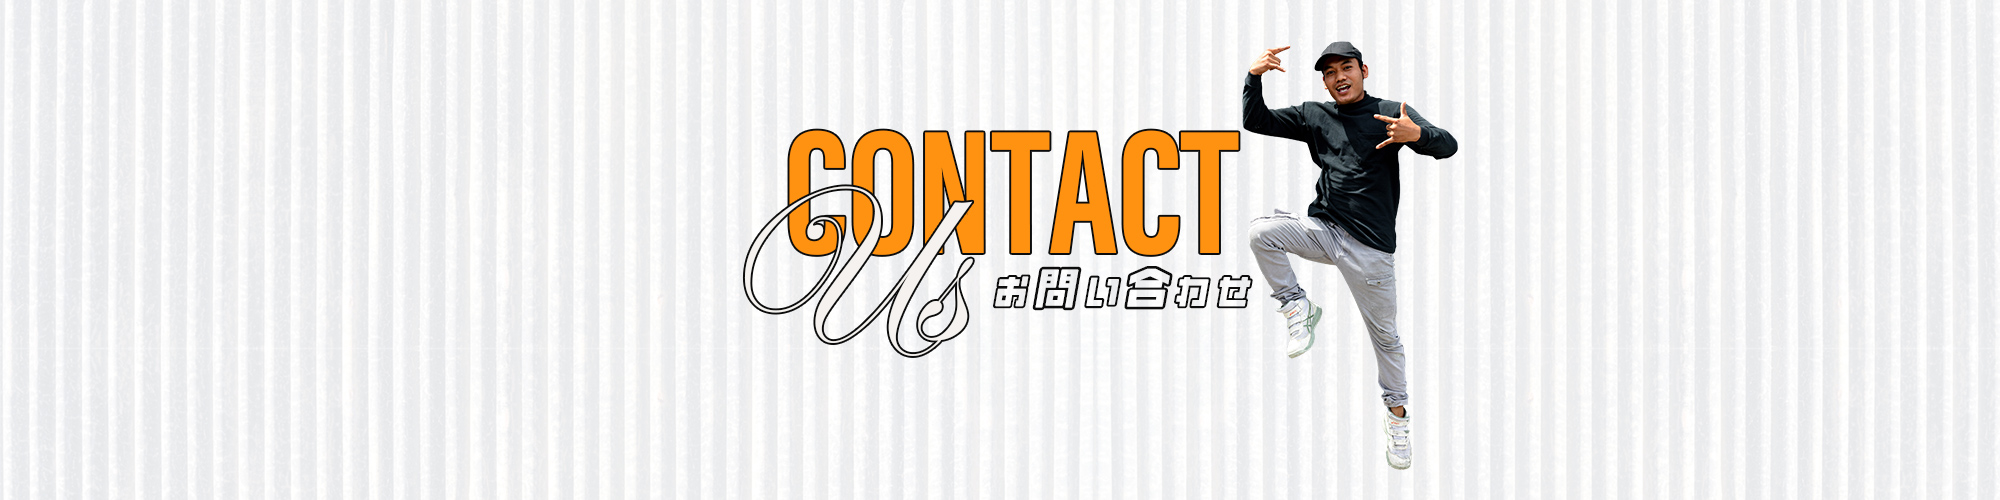 bnr_contact_def